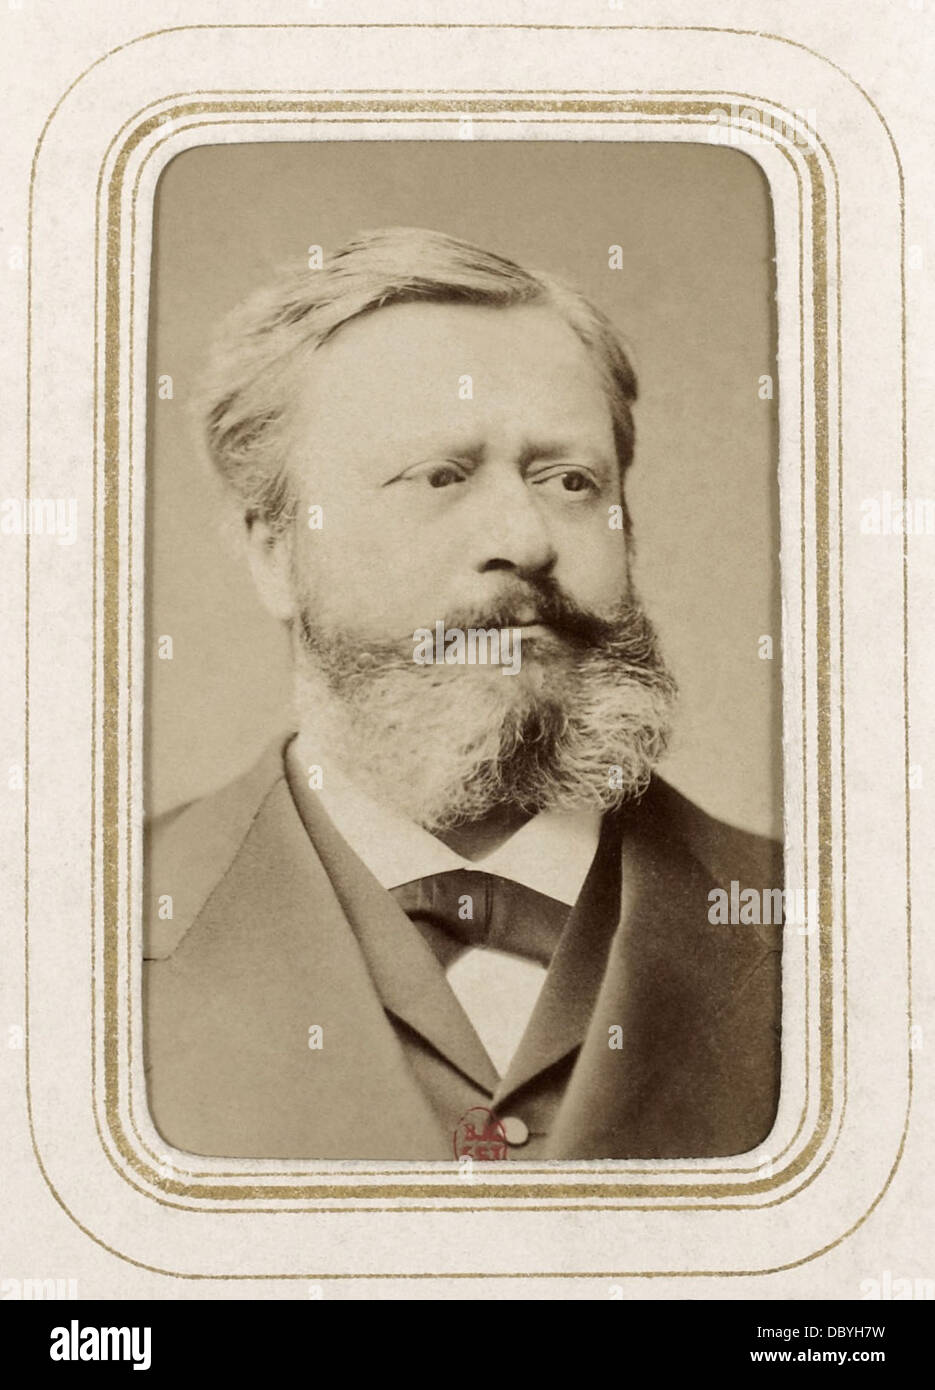 Edmond über (1828 – 1885), französischer Schriftsteller (Schriftsteller), Journalist und Kunstkritiker, Mitglied der Académie française Stockfoto